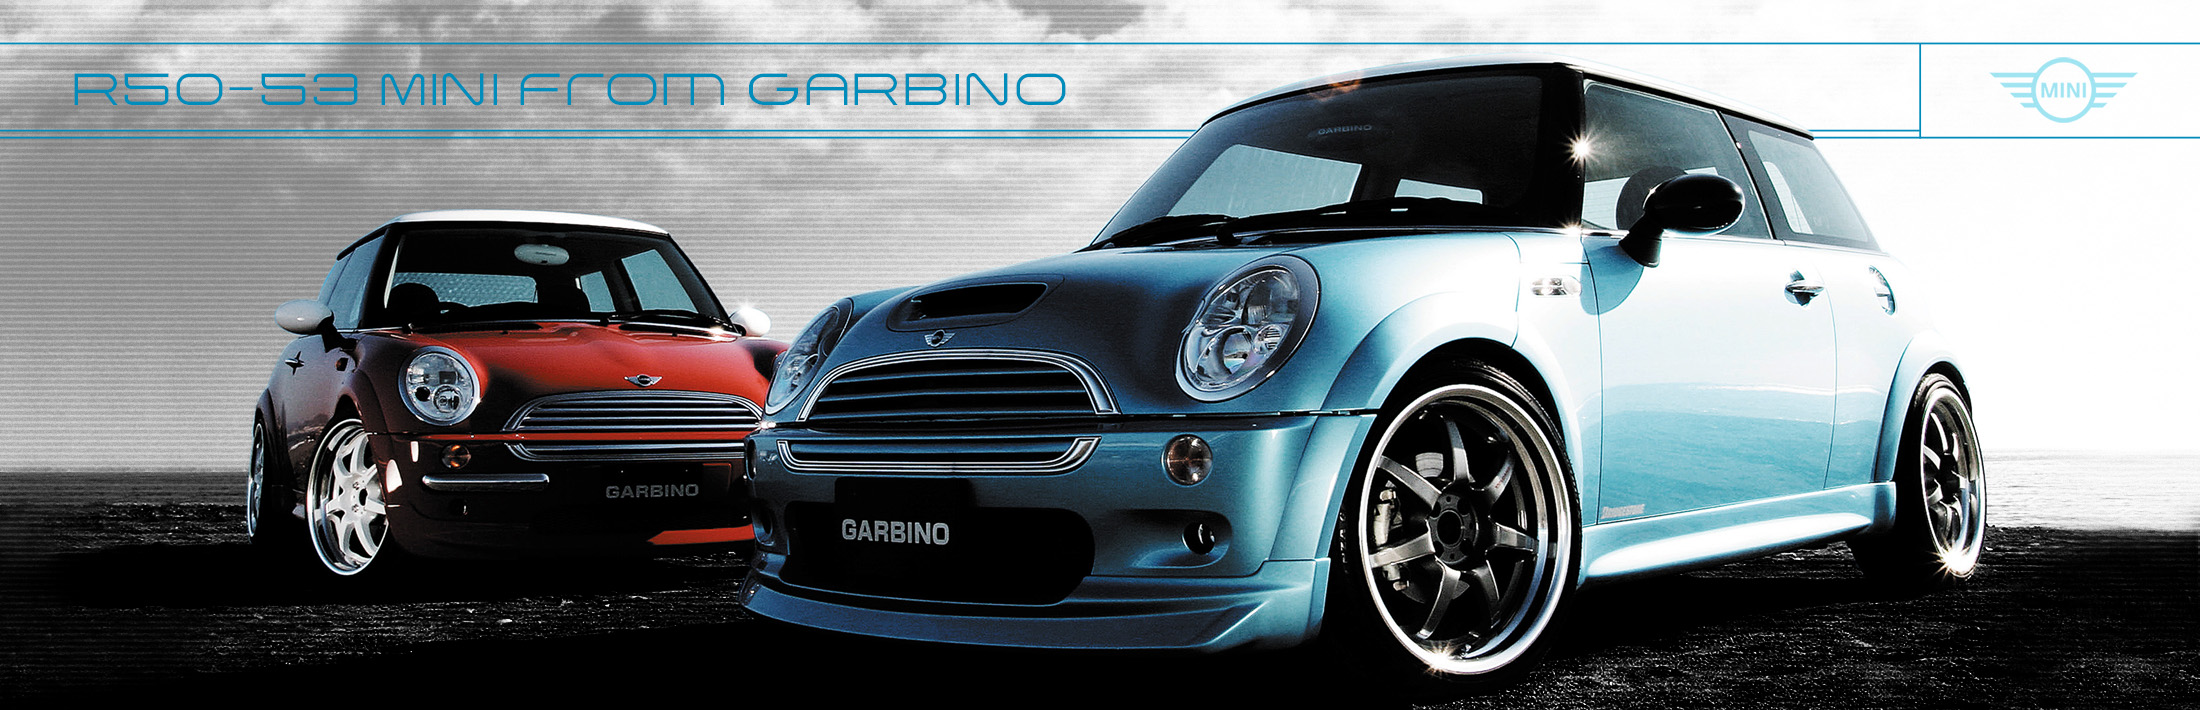 GARBINO R50-53 MINI